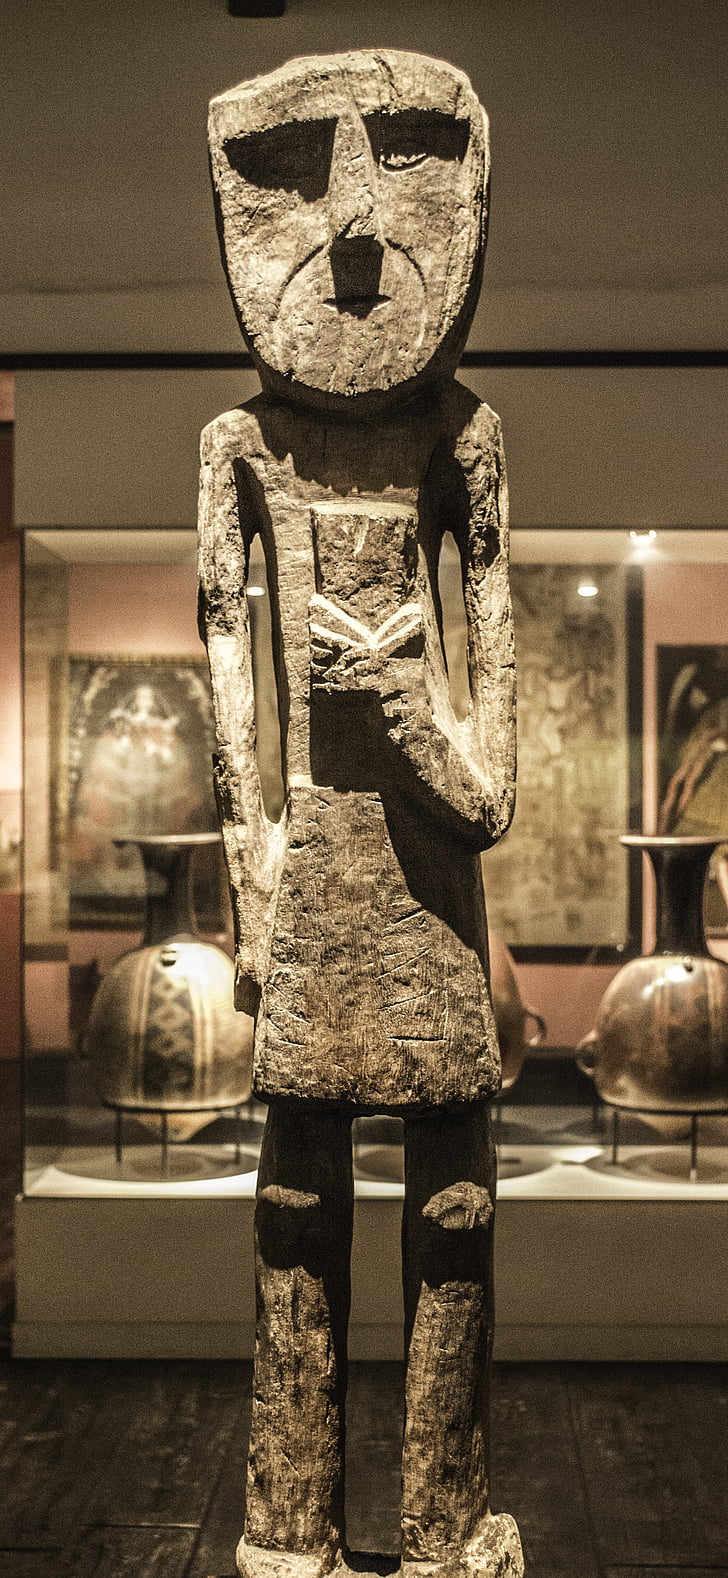 Statua, Museo, magrissime, in legno, vecchio, peruviano, manufatto